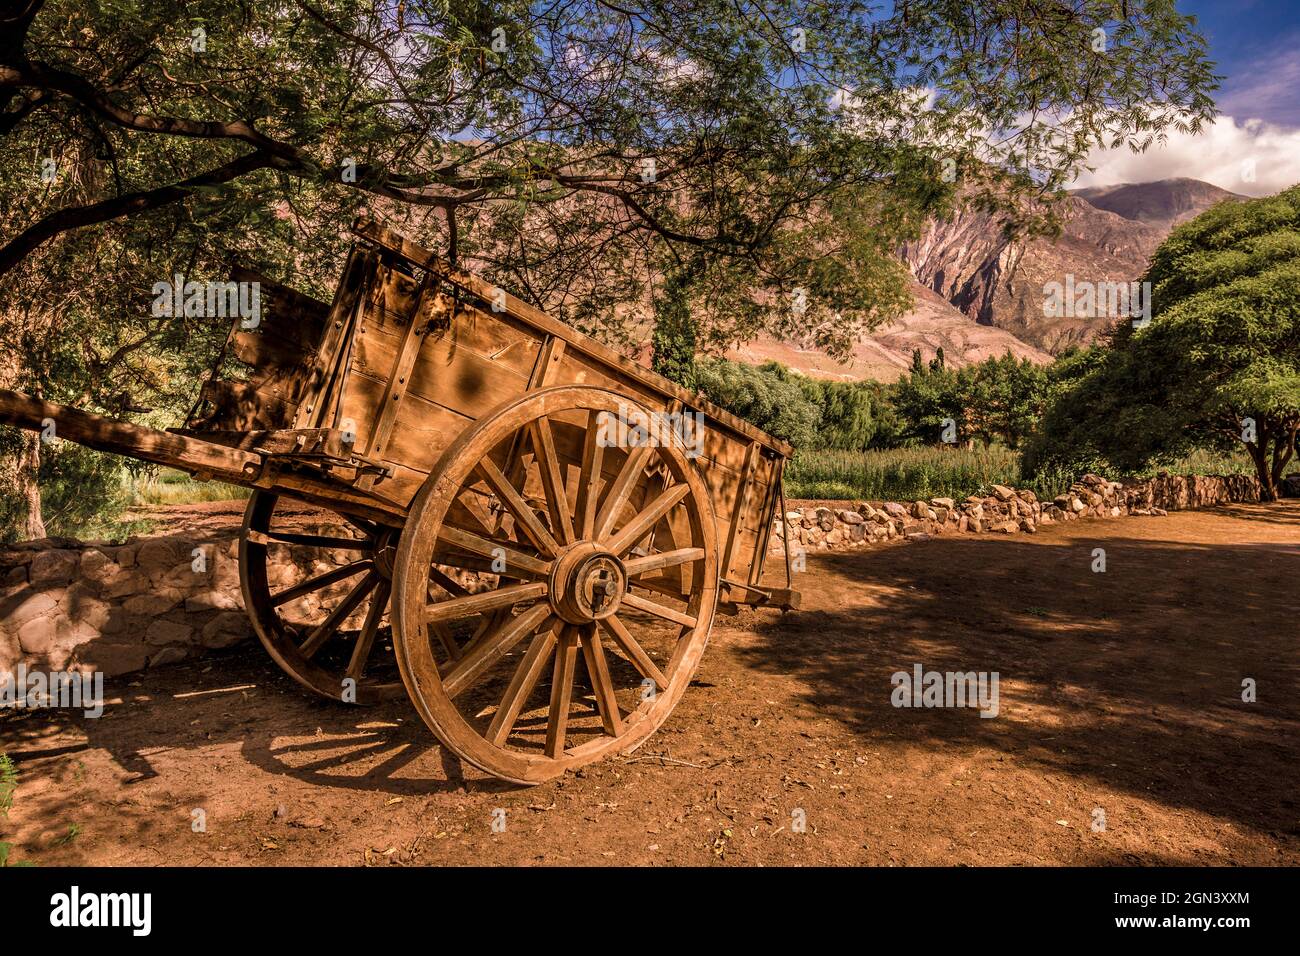 Grande et ancienne charrette en bois tirée par des chevaux dans un paysage de montagne à Jujuy, en Argentine. Quebrada de Humahuaca Banque D'Images